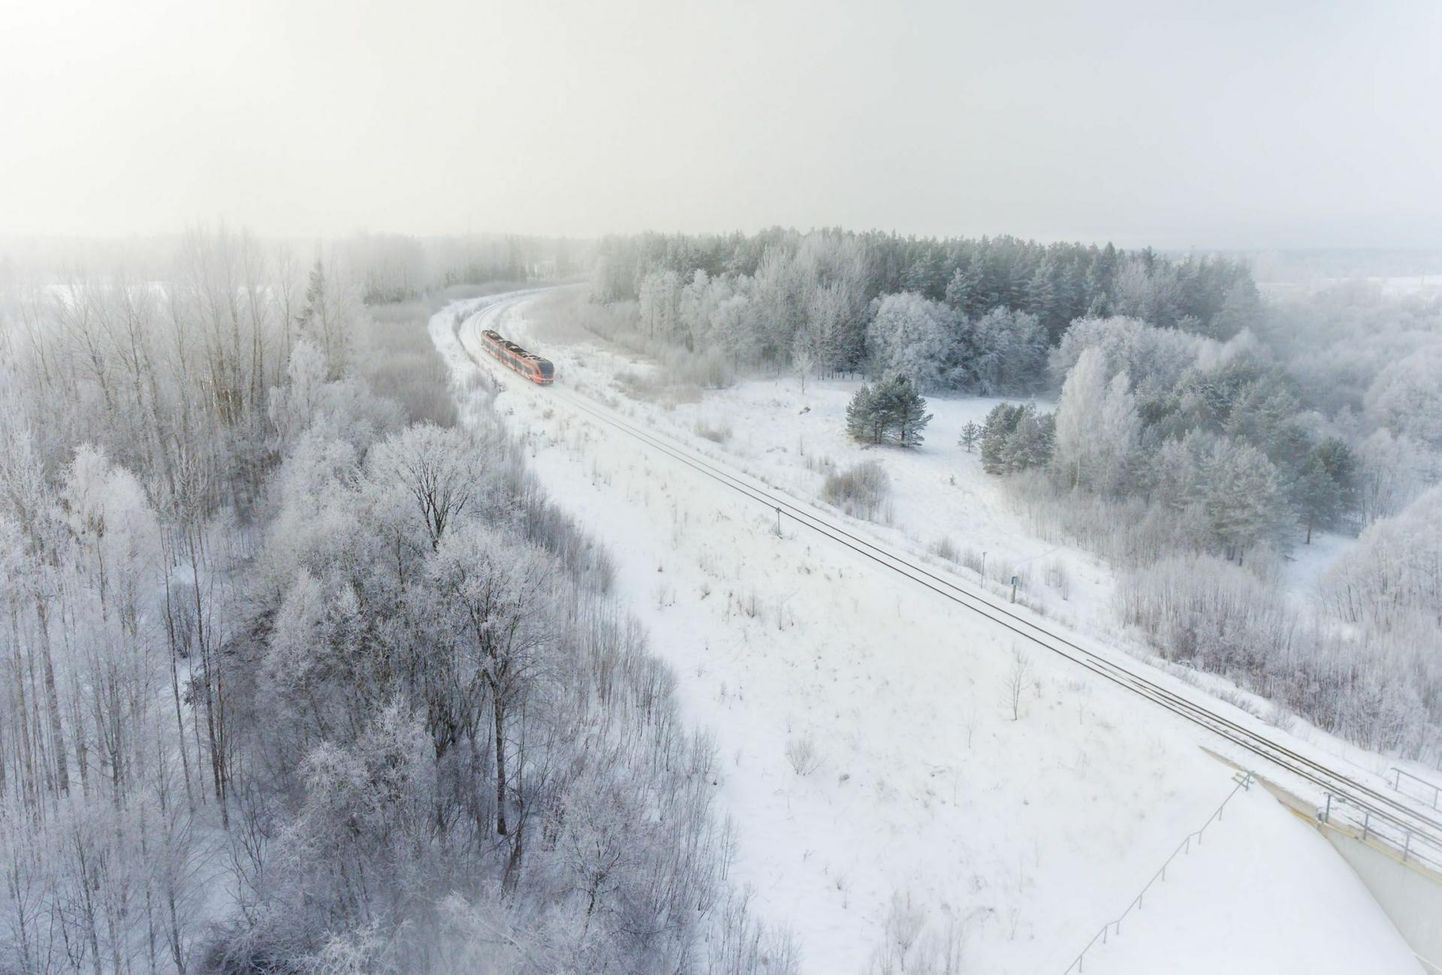 Pühapäeval valitsevad kõige suuremad külmakraadid Lõuna-Eestis.